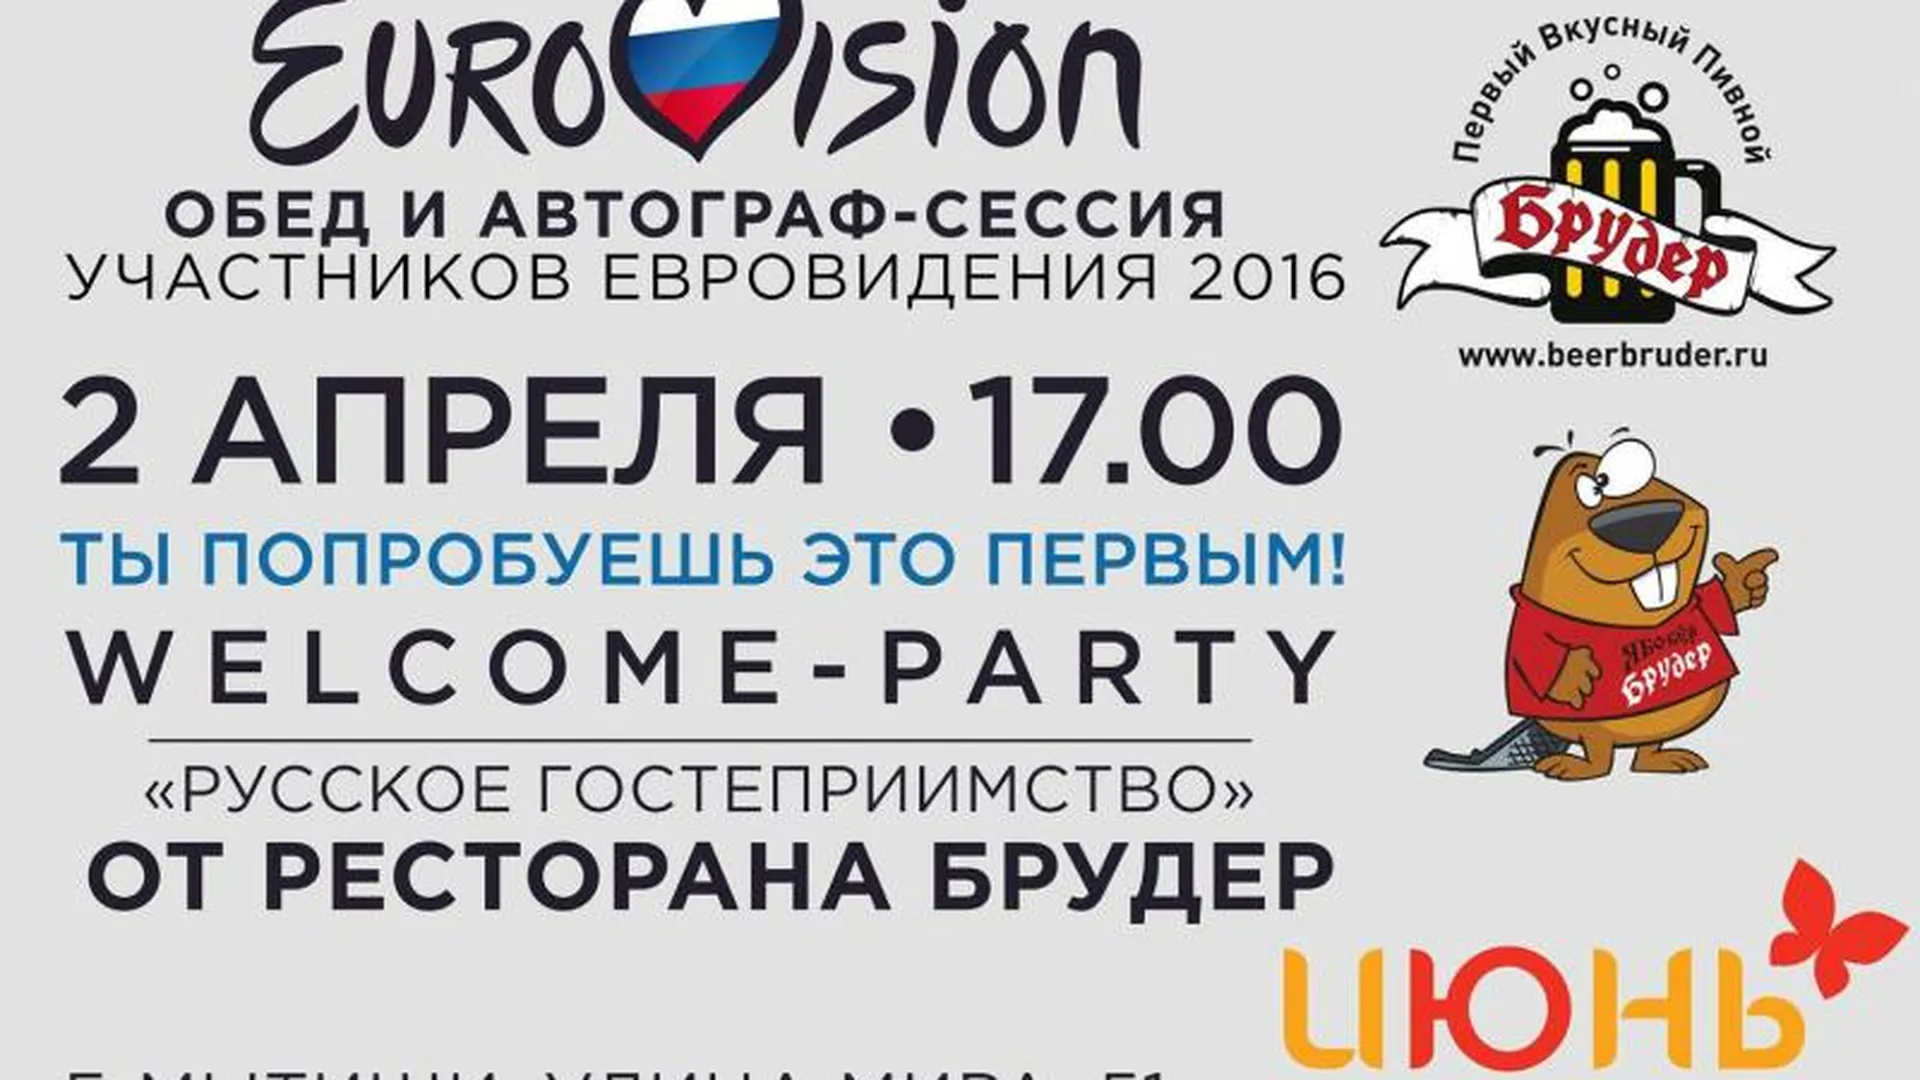 Welcome-party для участников Евровидения-2016 и их фанатов пройдет в подмосковном ресторане 2 апреля